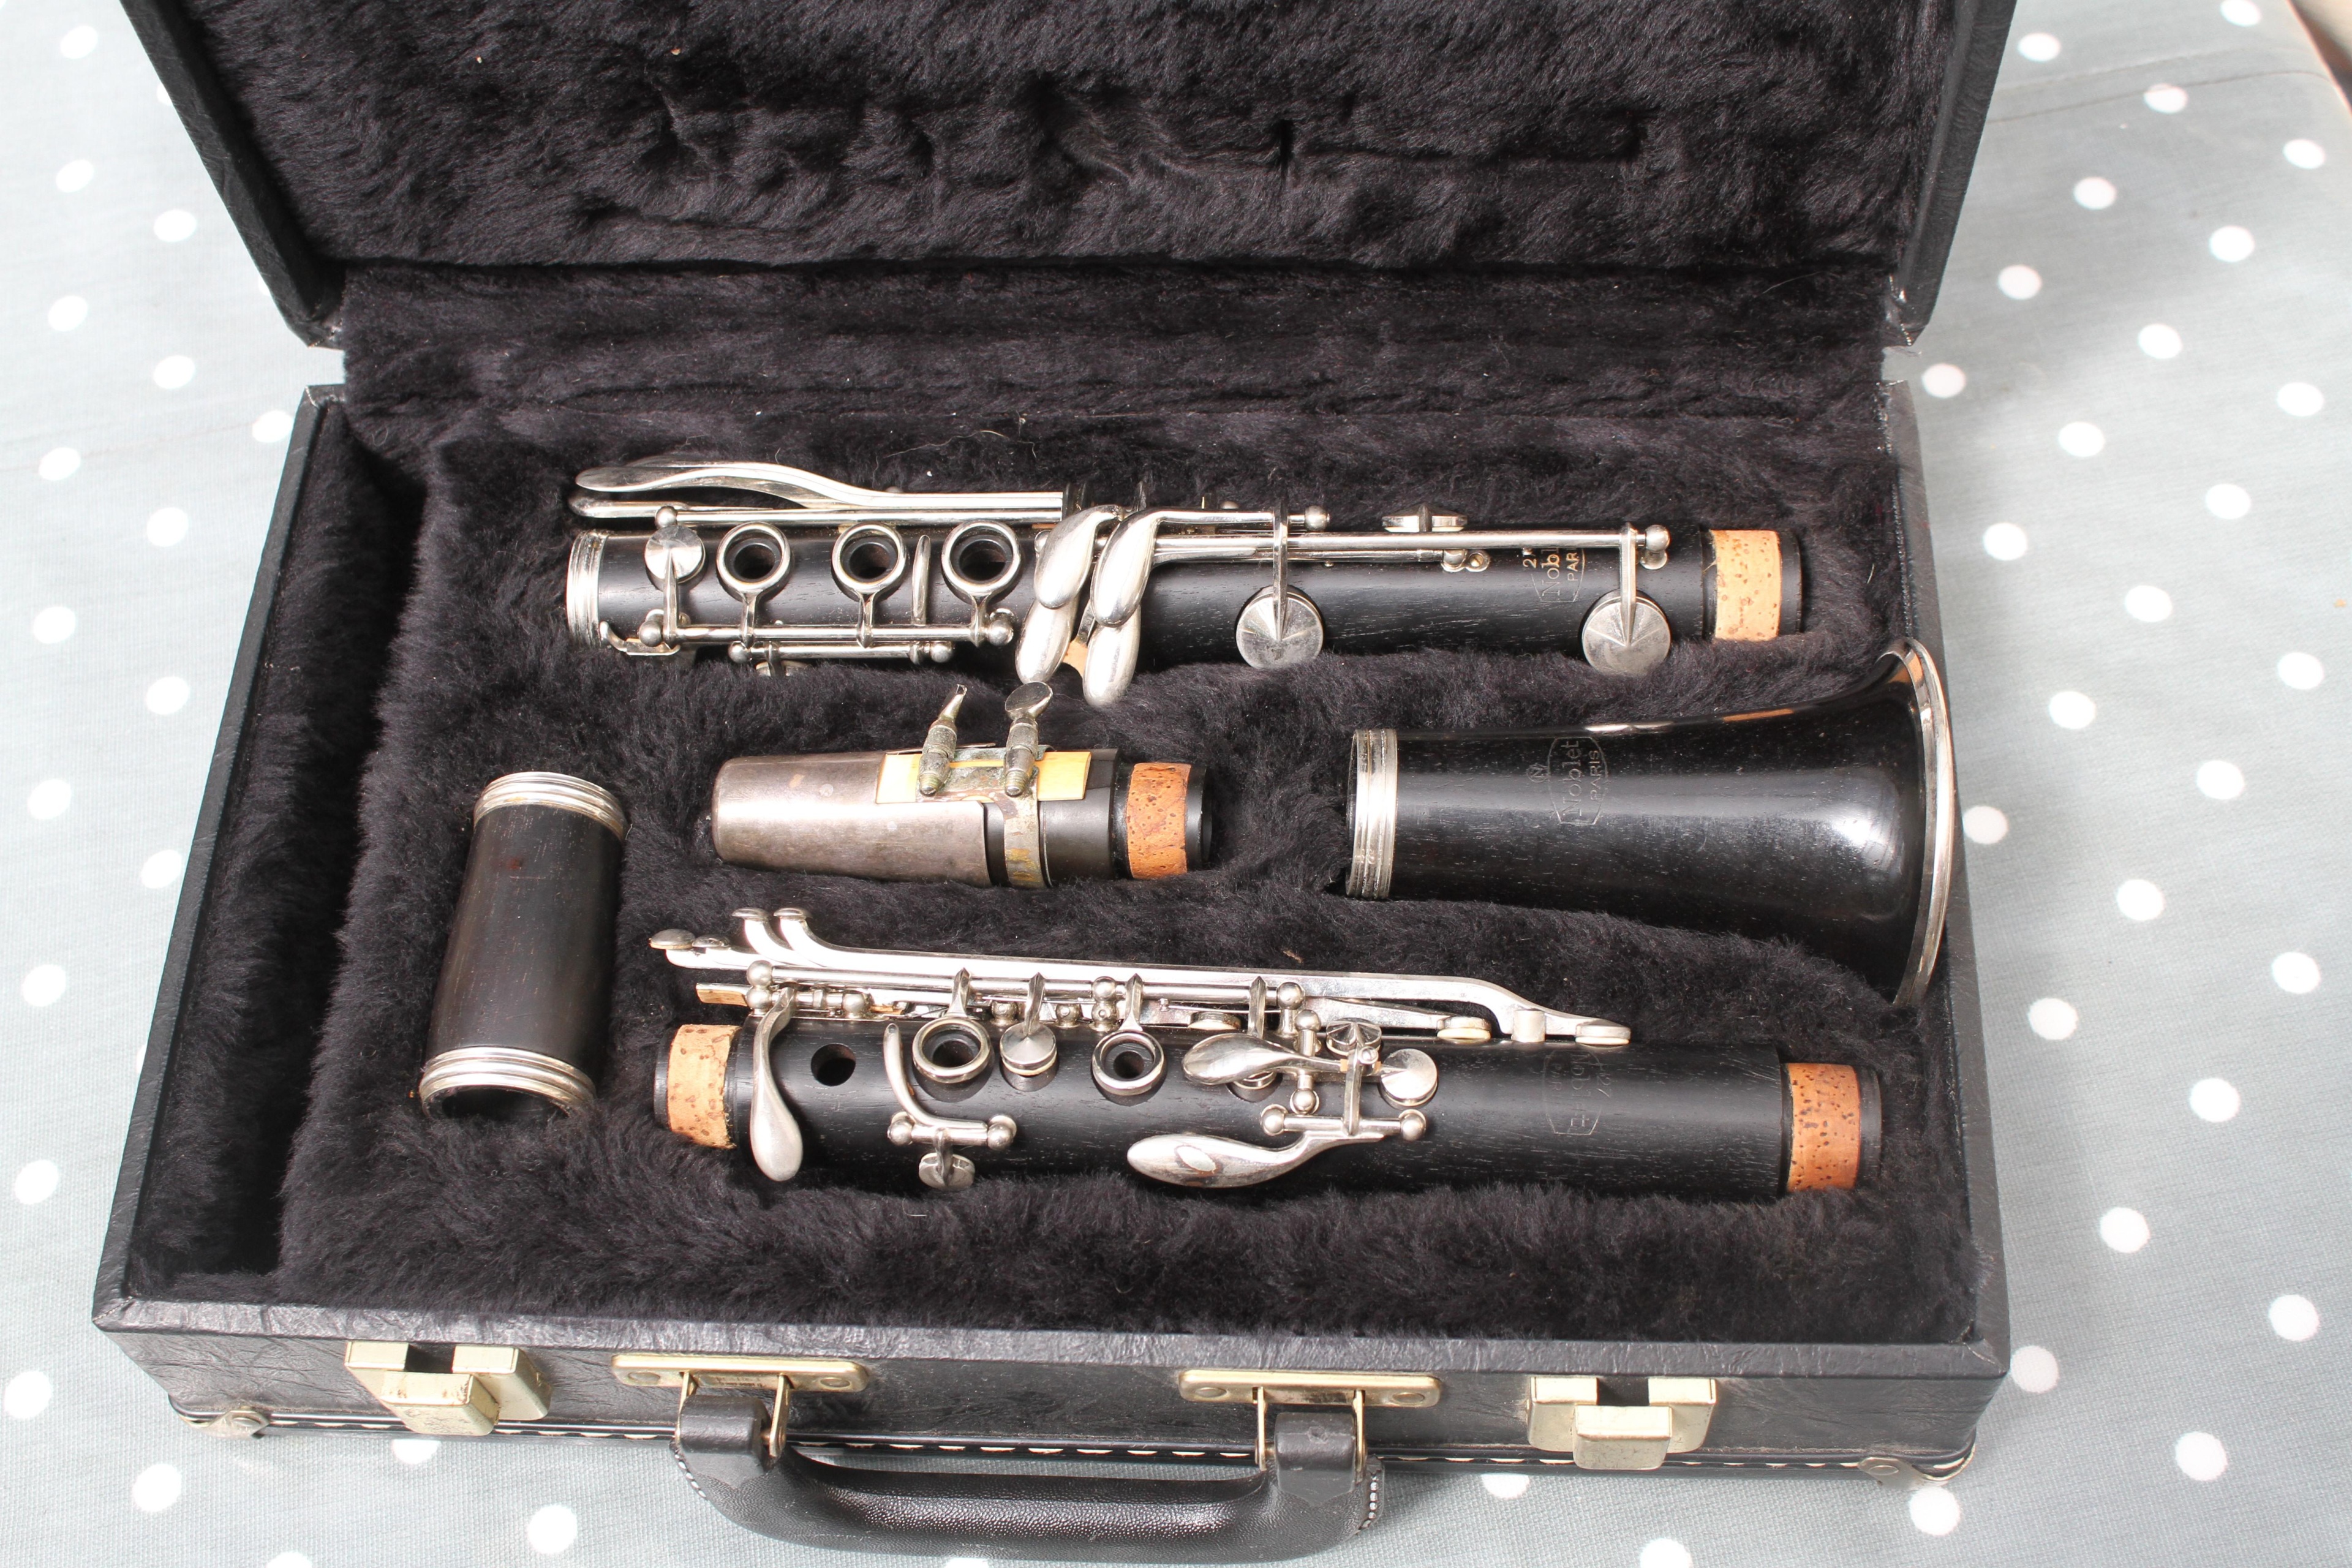 27 noblet paris clarinet